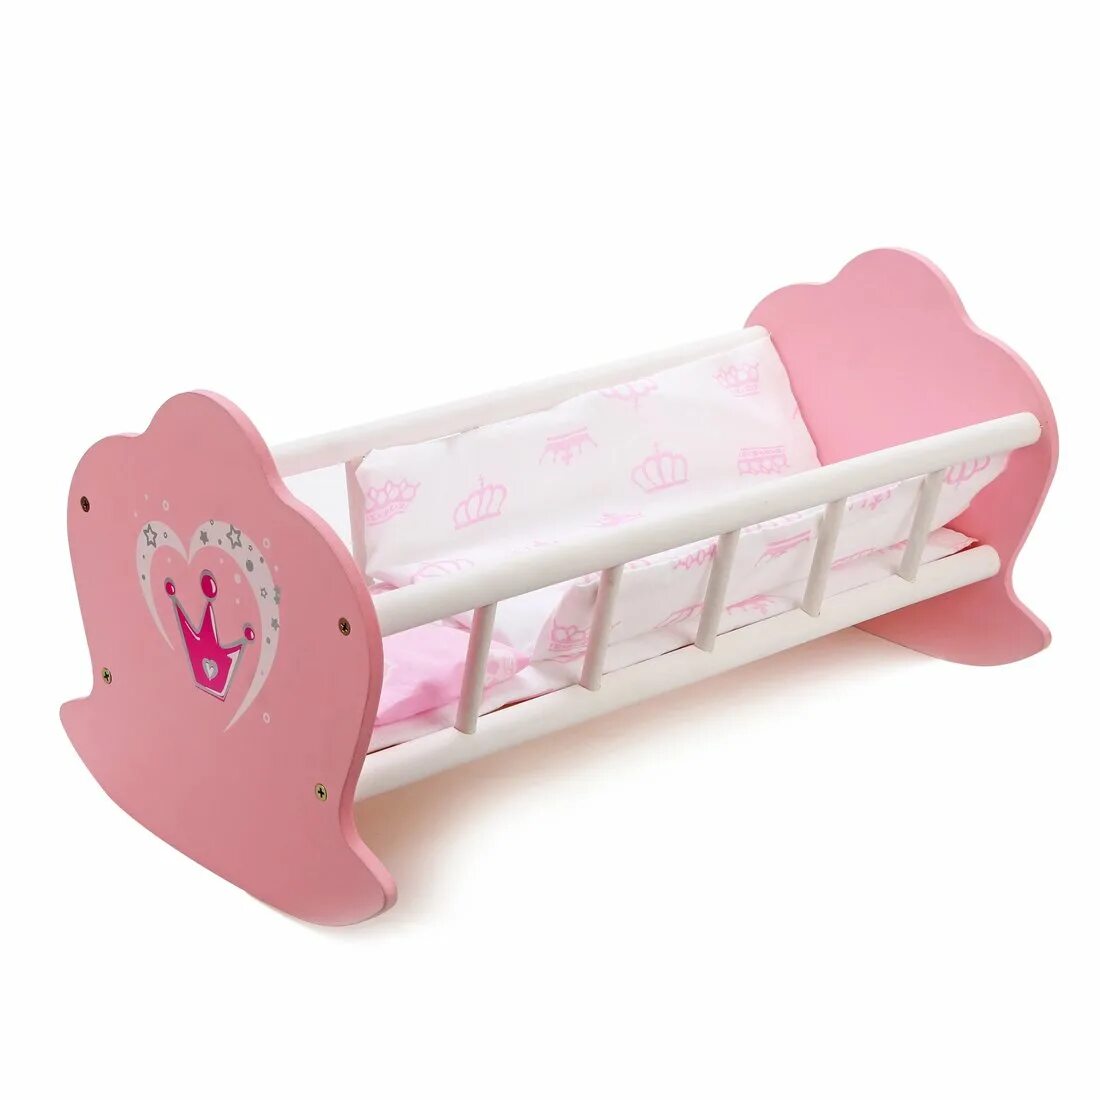 Детская кроватка для кукол. Кровать для кукол Mary Poppins. Mary Poppins кроватка корона. Mary Poppins кроватка-люлька для куклы корона.